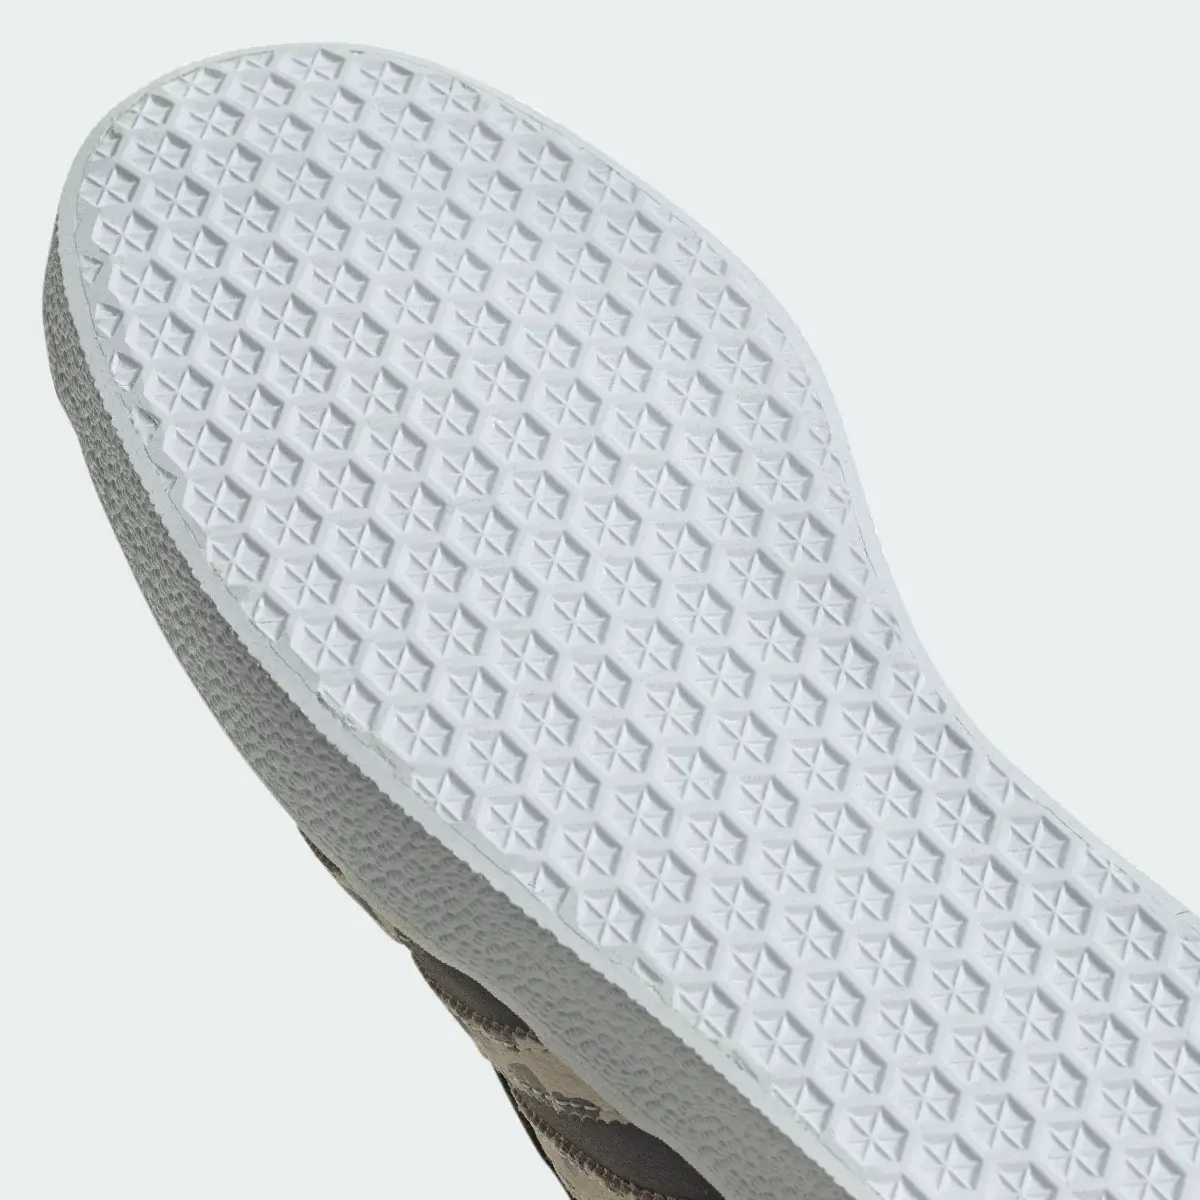 Adidas Gazelle Shoes. 3